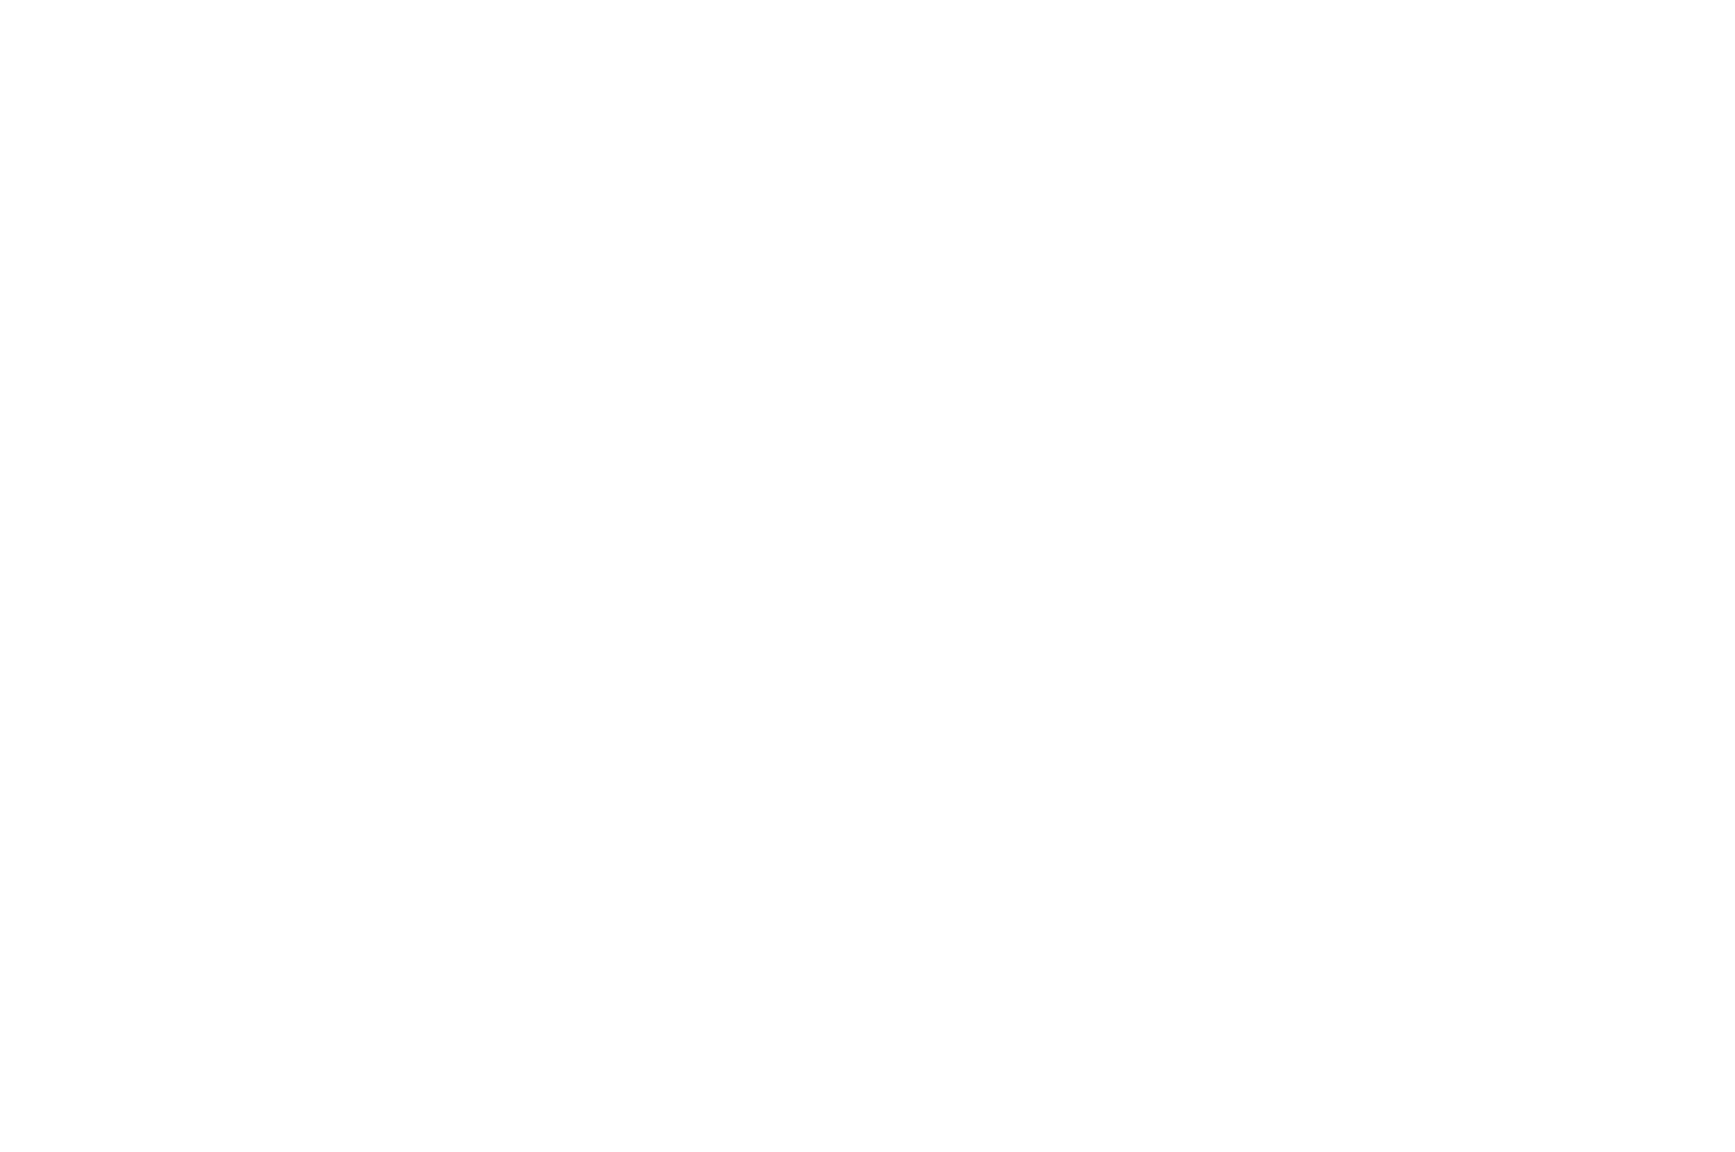 BEST PRODUCTION DESIGN - New York International Women Festival - 2021